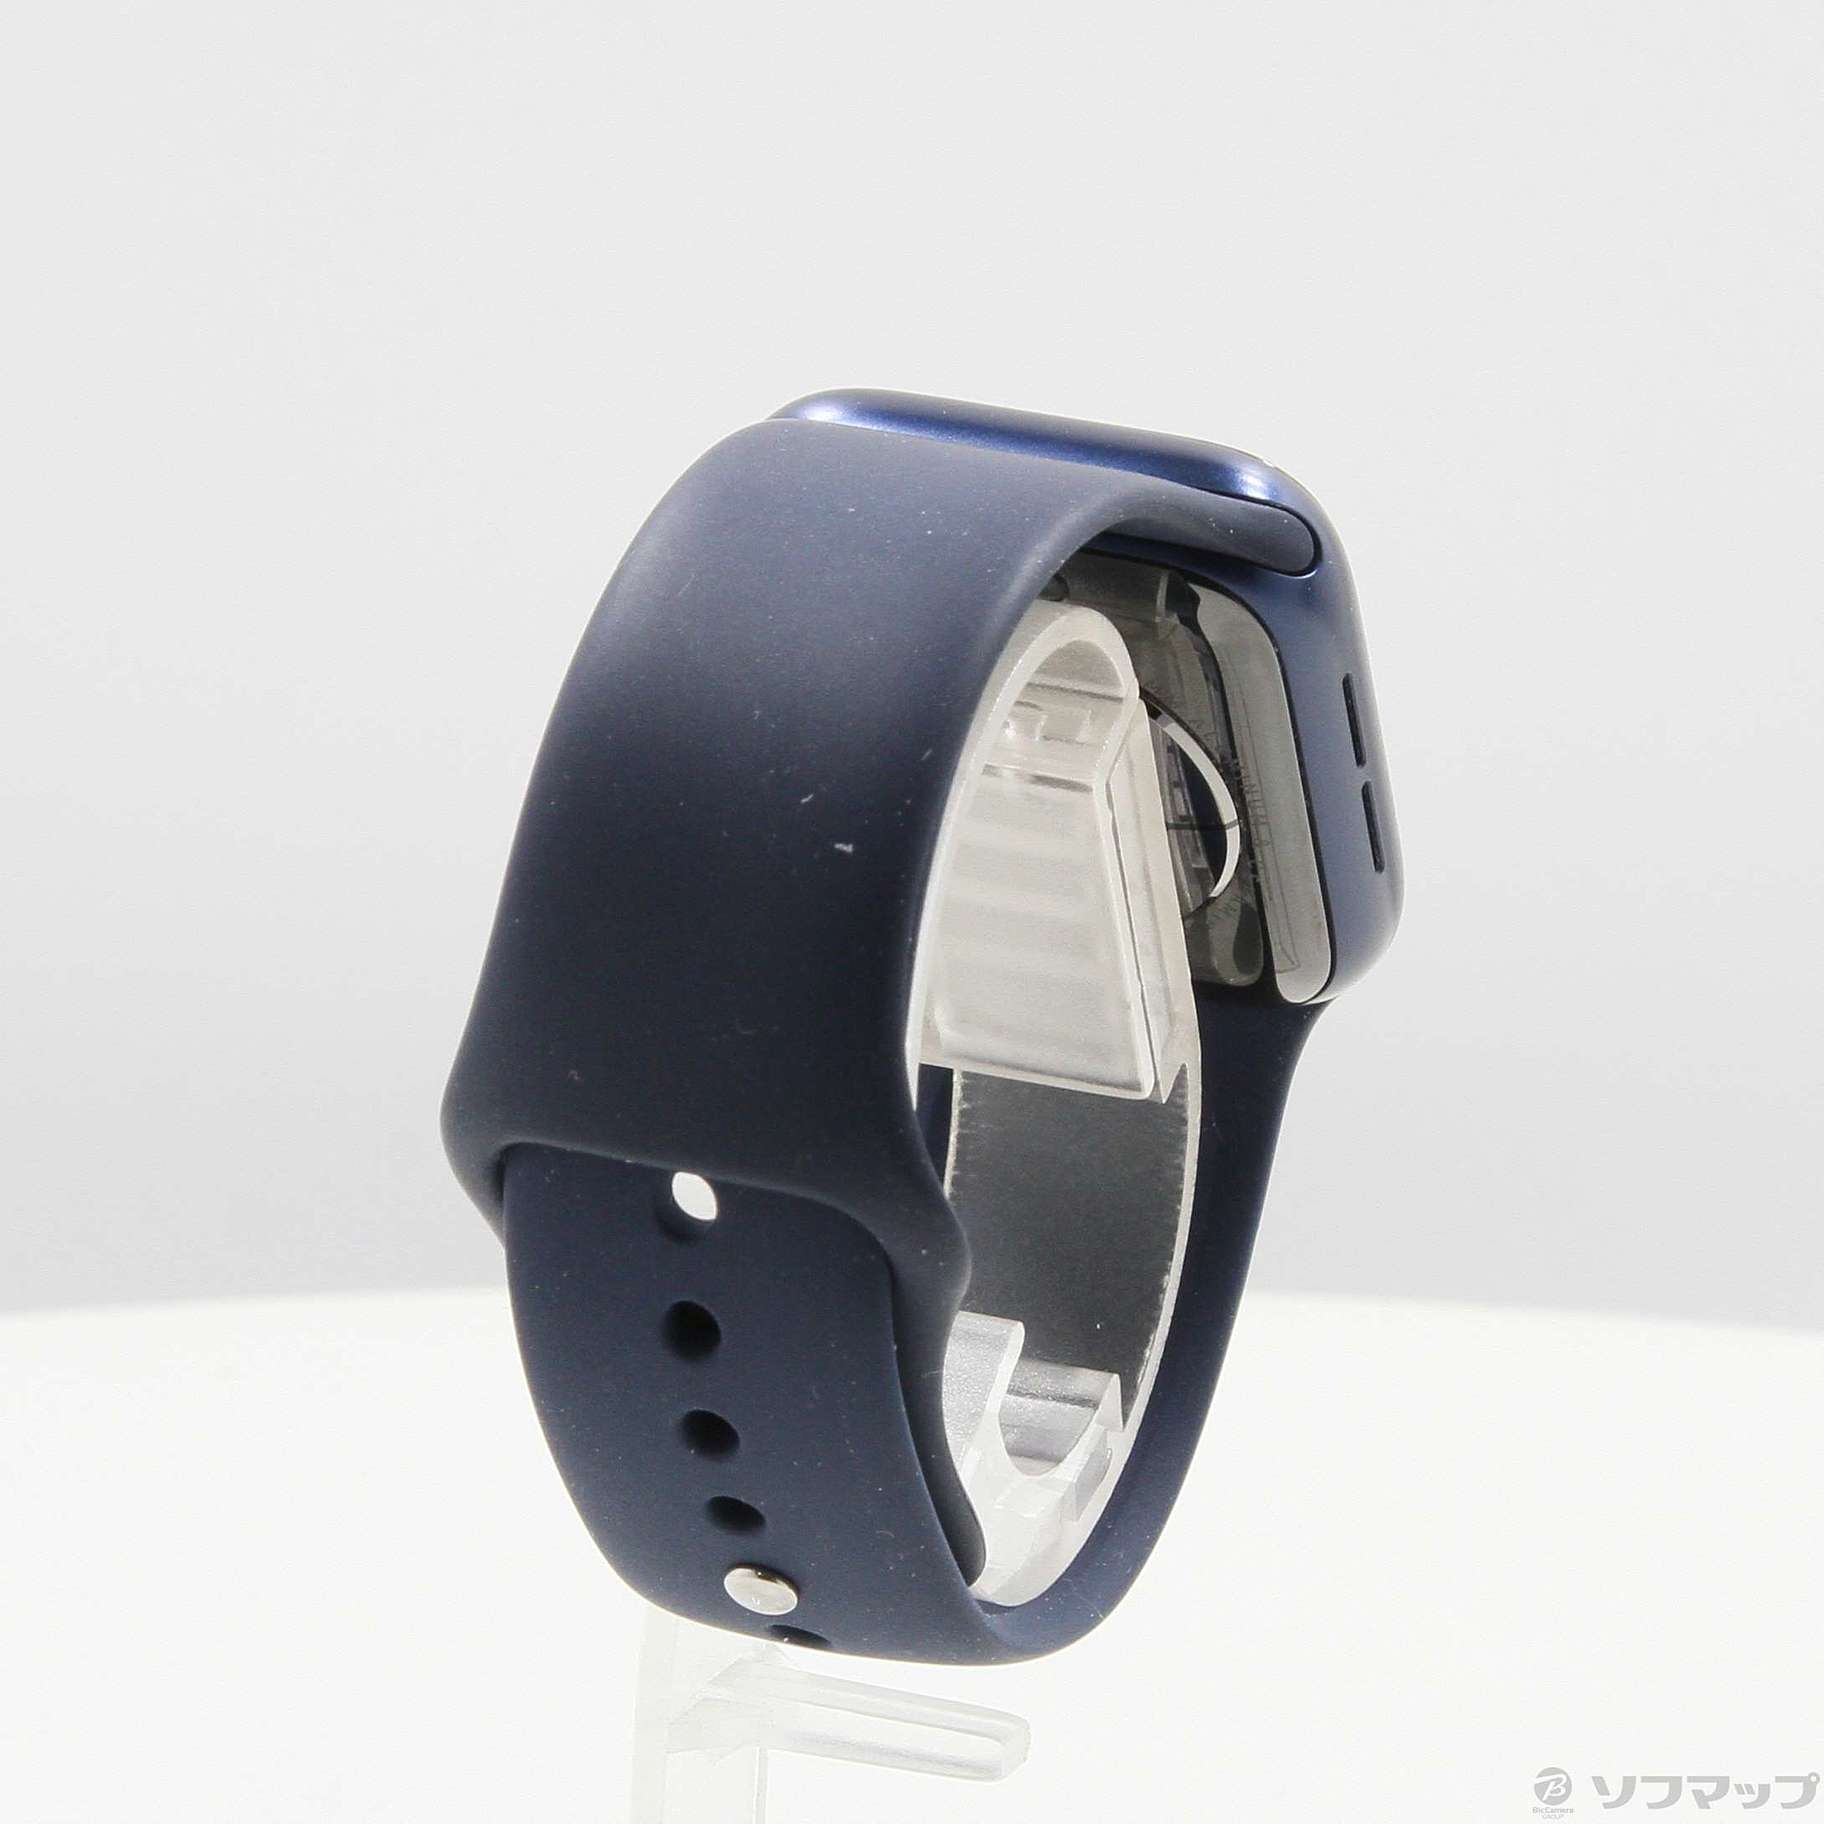 Apple(アップル) Apple Watch Series GPS 40mm ブルーアルミニウムケース  ディープネイビースポーツバンド〔198-ud〕